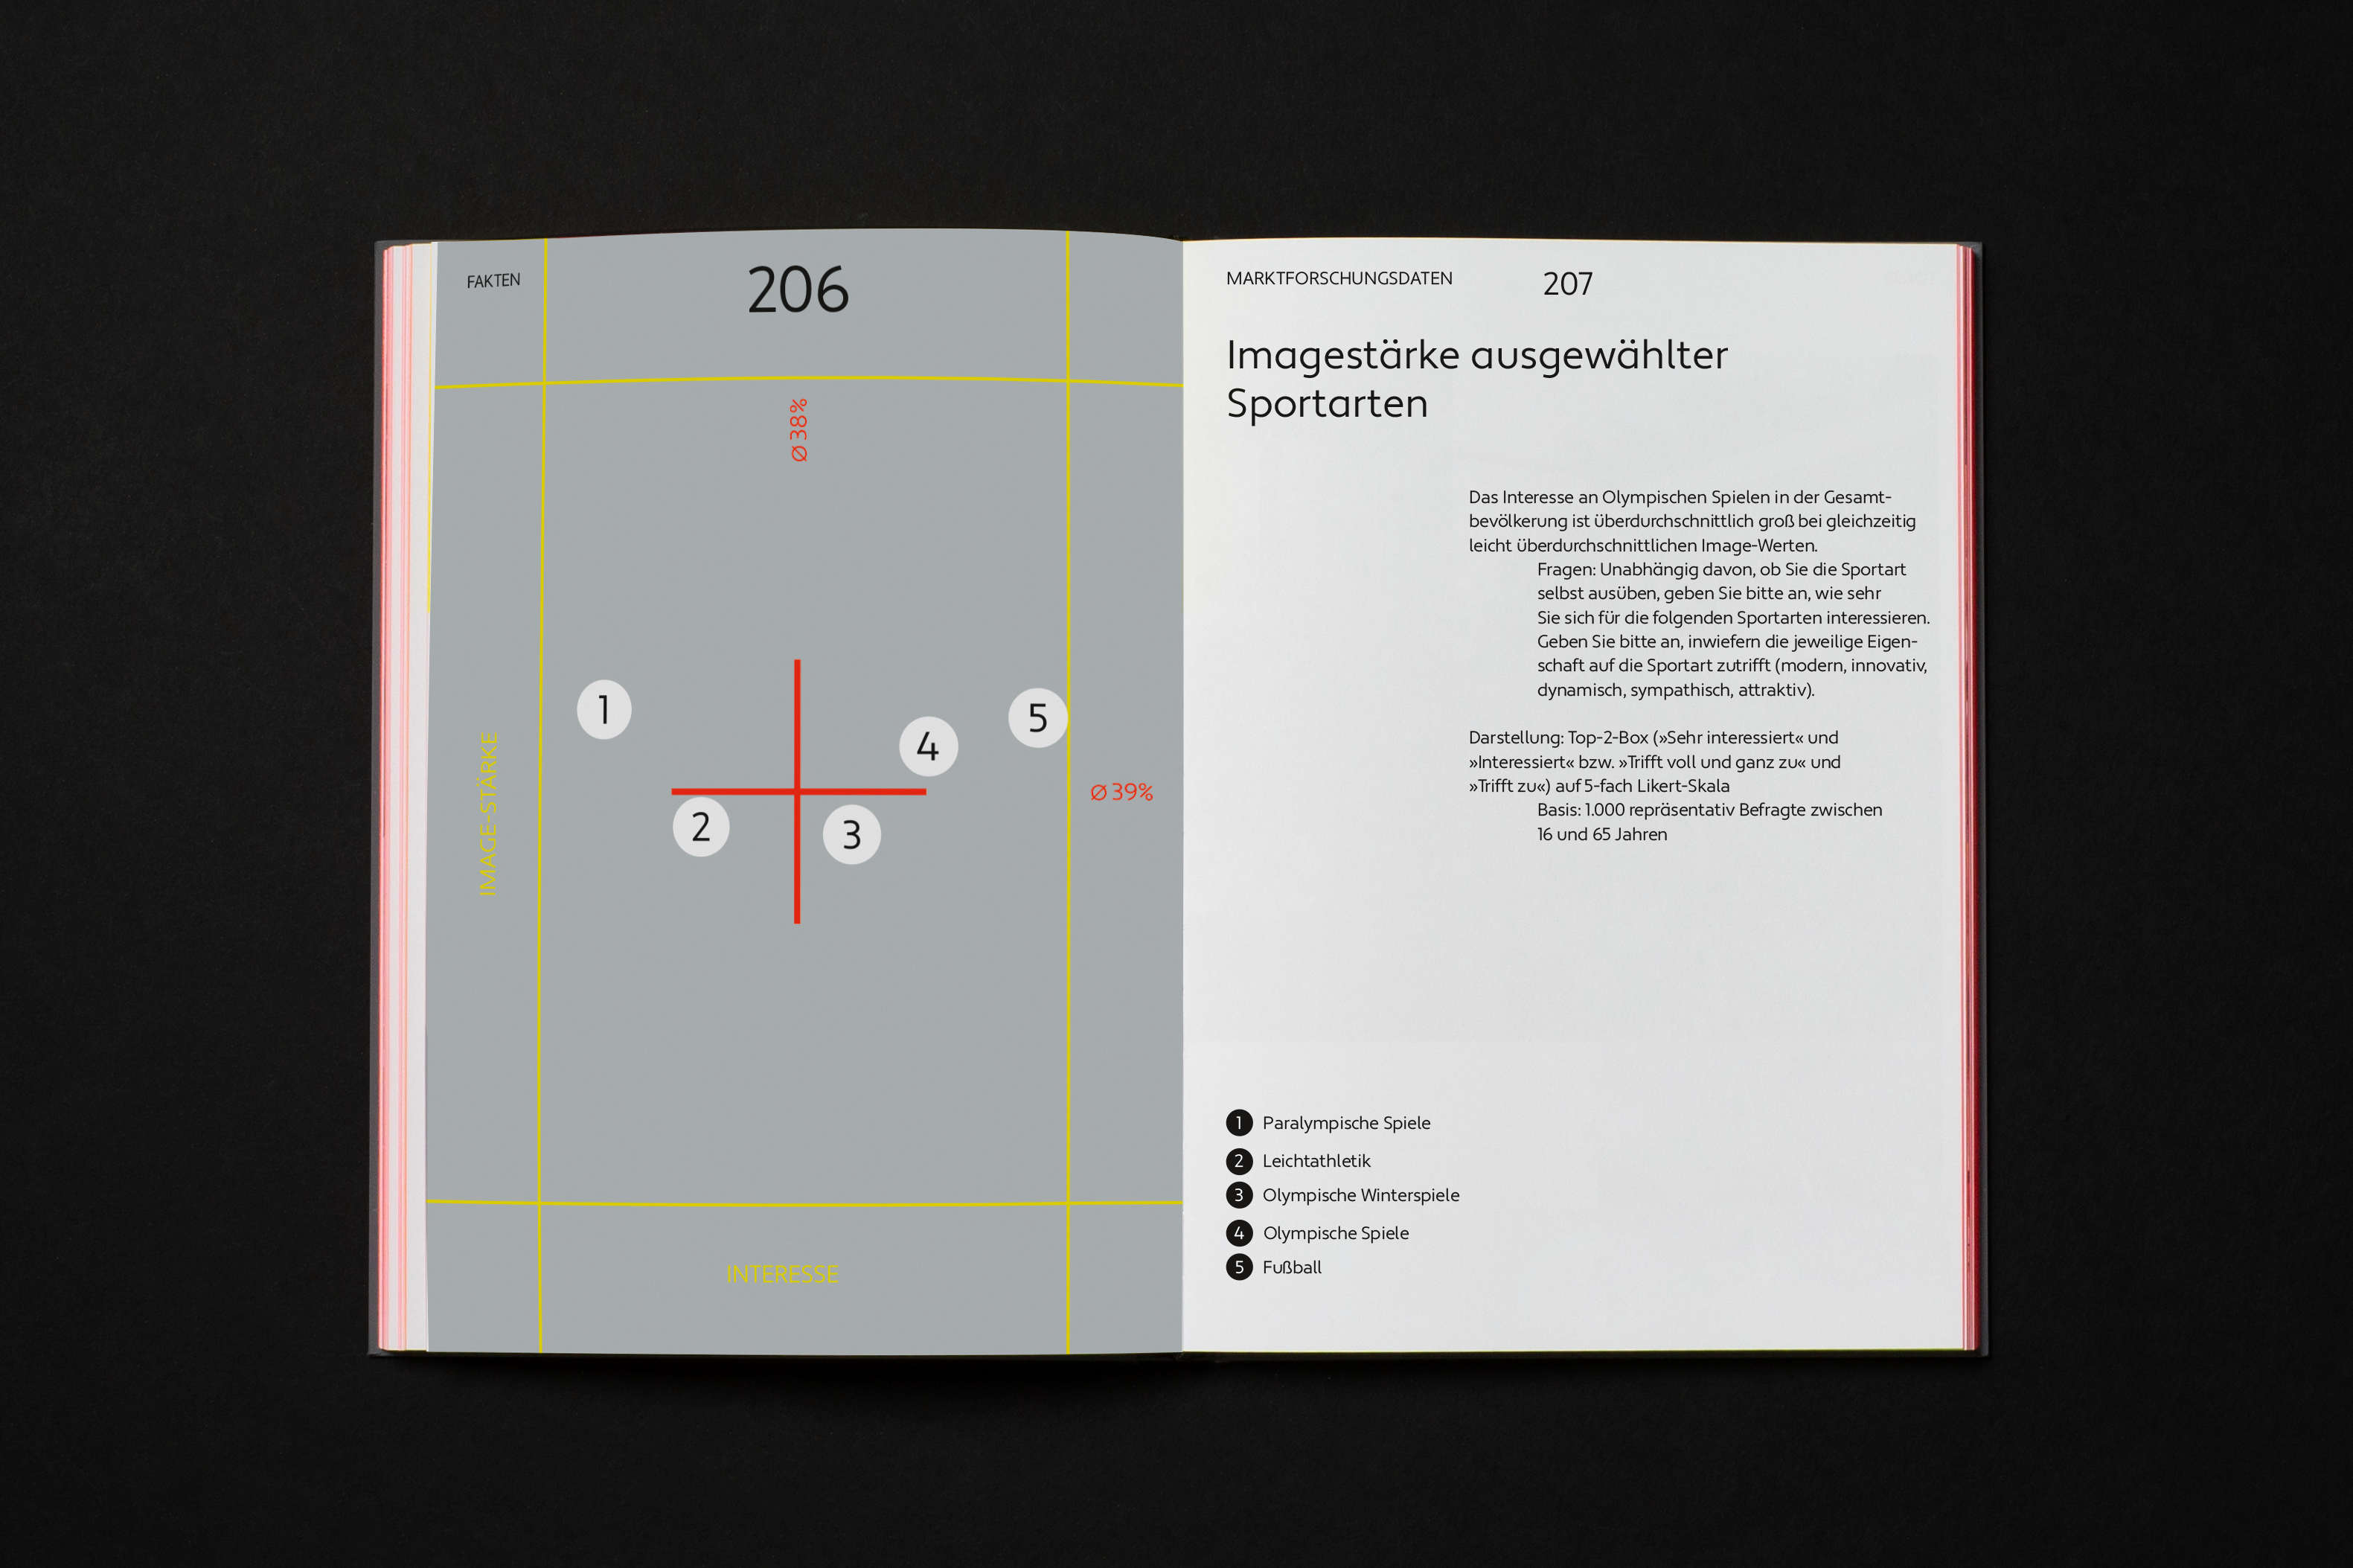 Katalogseite mit Infografik, Legende und Beschreibung / Catalog page with infographic, legend and description